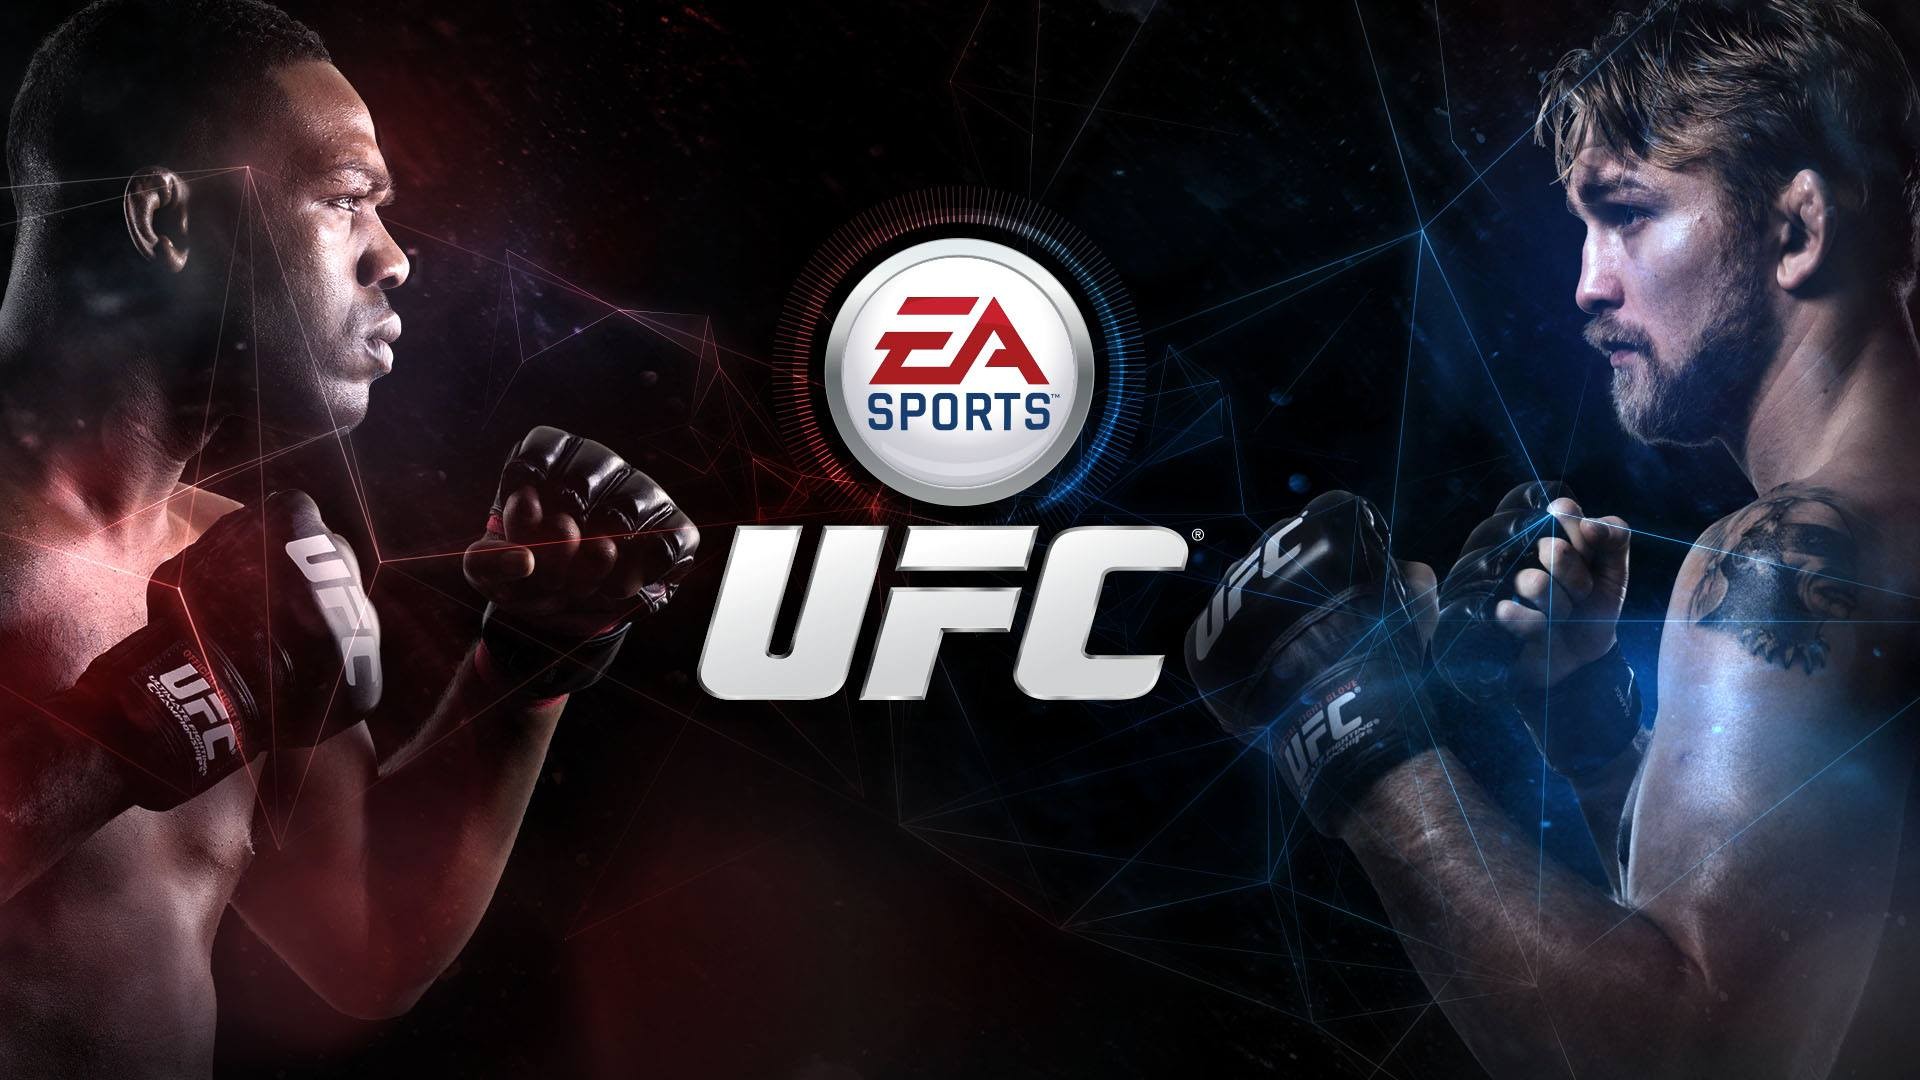 EA Sports UFC, UFC, Jon Jones, Alexander Gustafsson Wallpaper